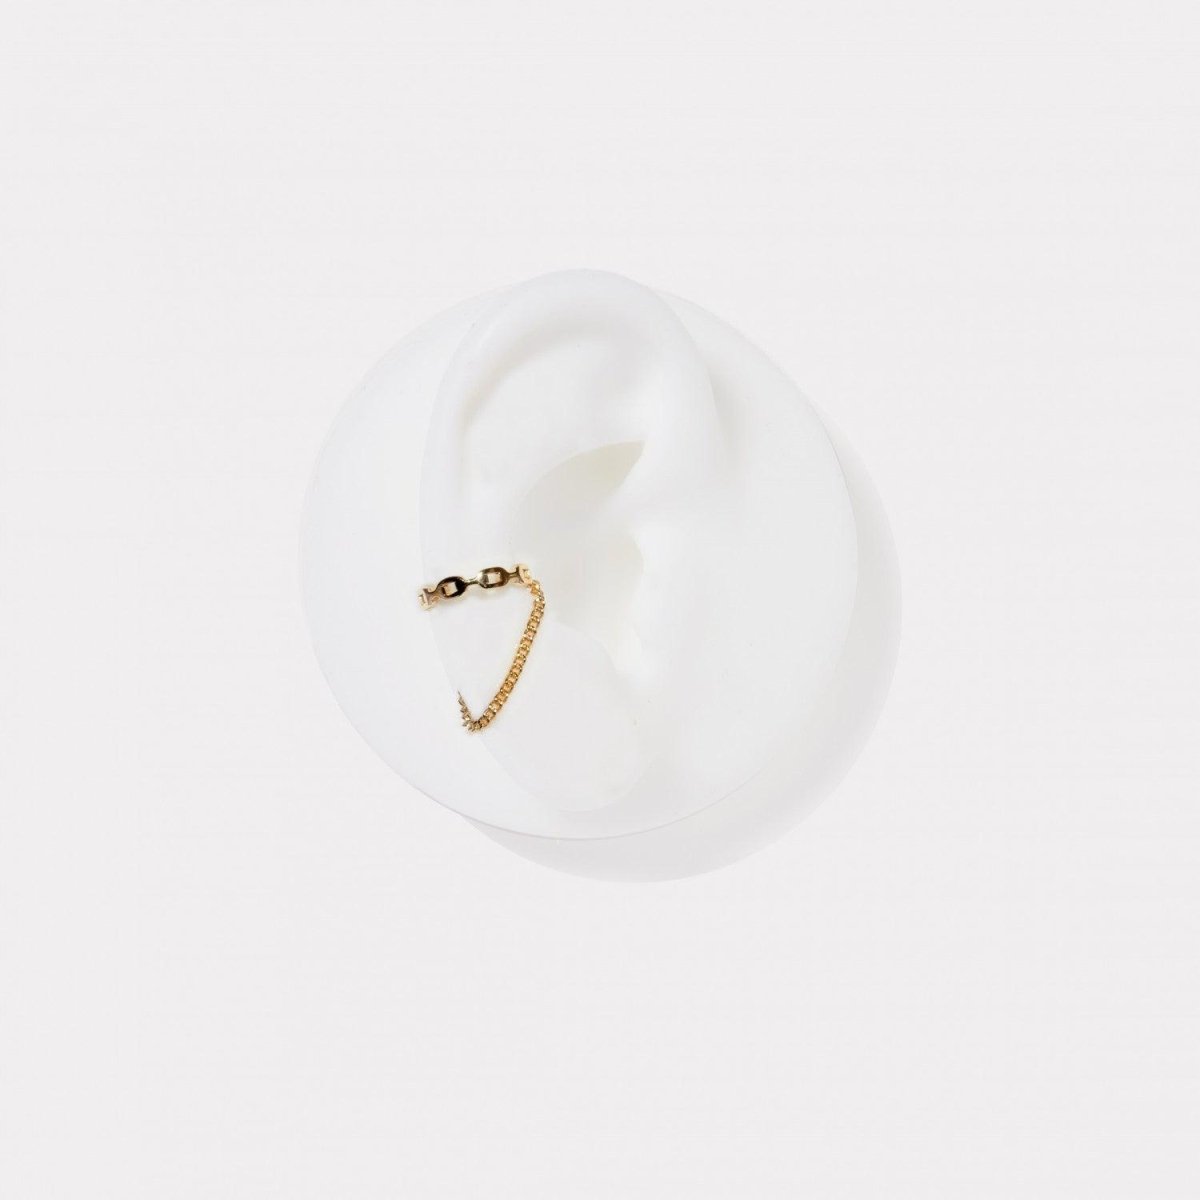 Pendiente · Ear cuff de plata bañada en oro diseño doble cadena colgante